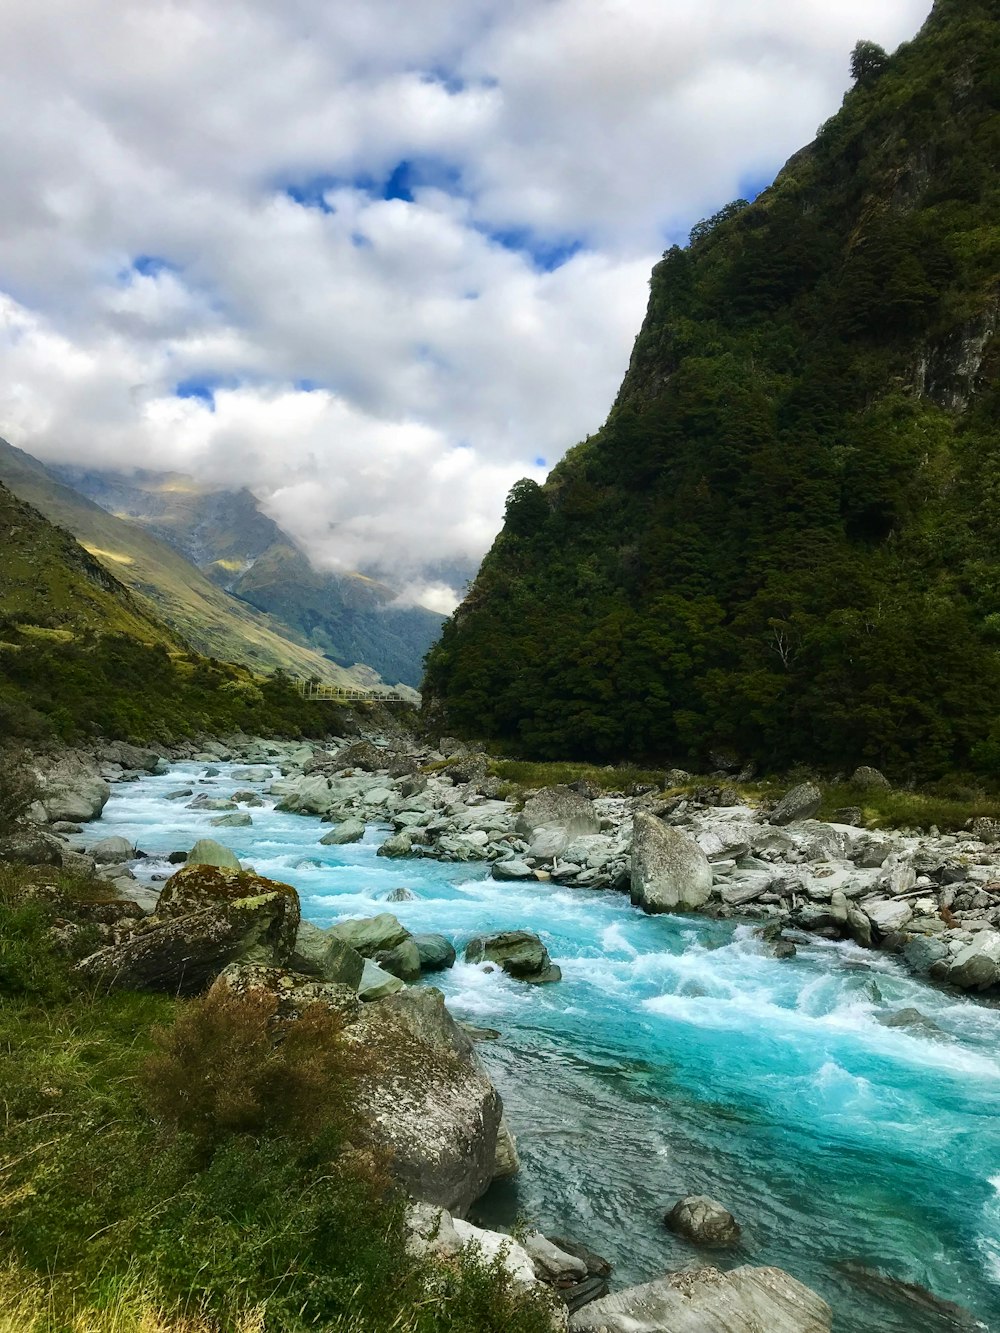 Río que fluye cerca de la montaña verde bajo nubes blancas